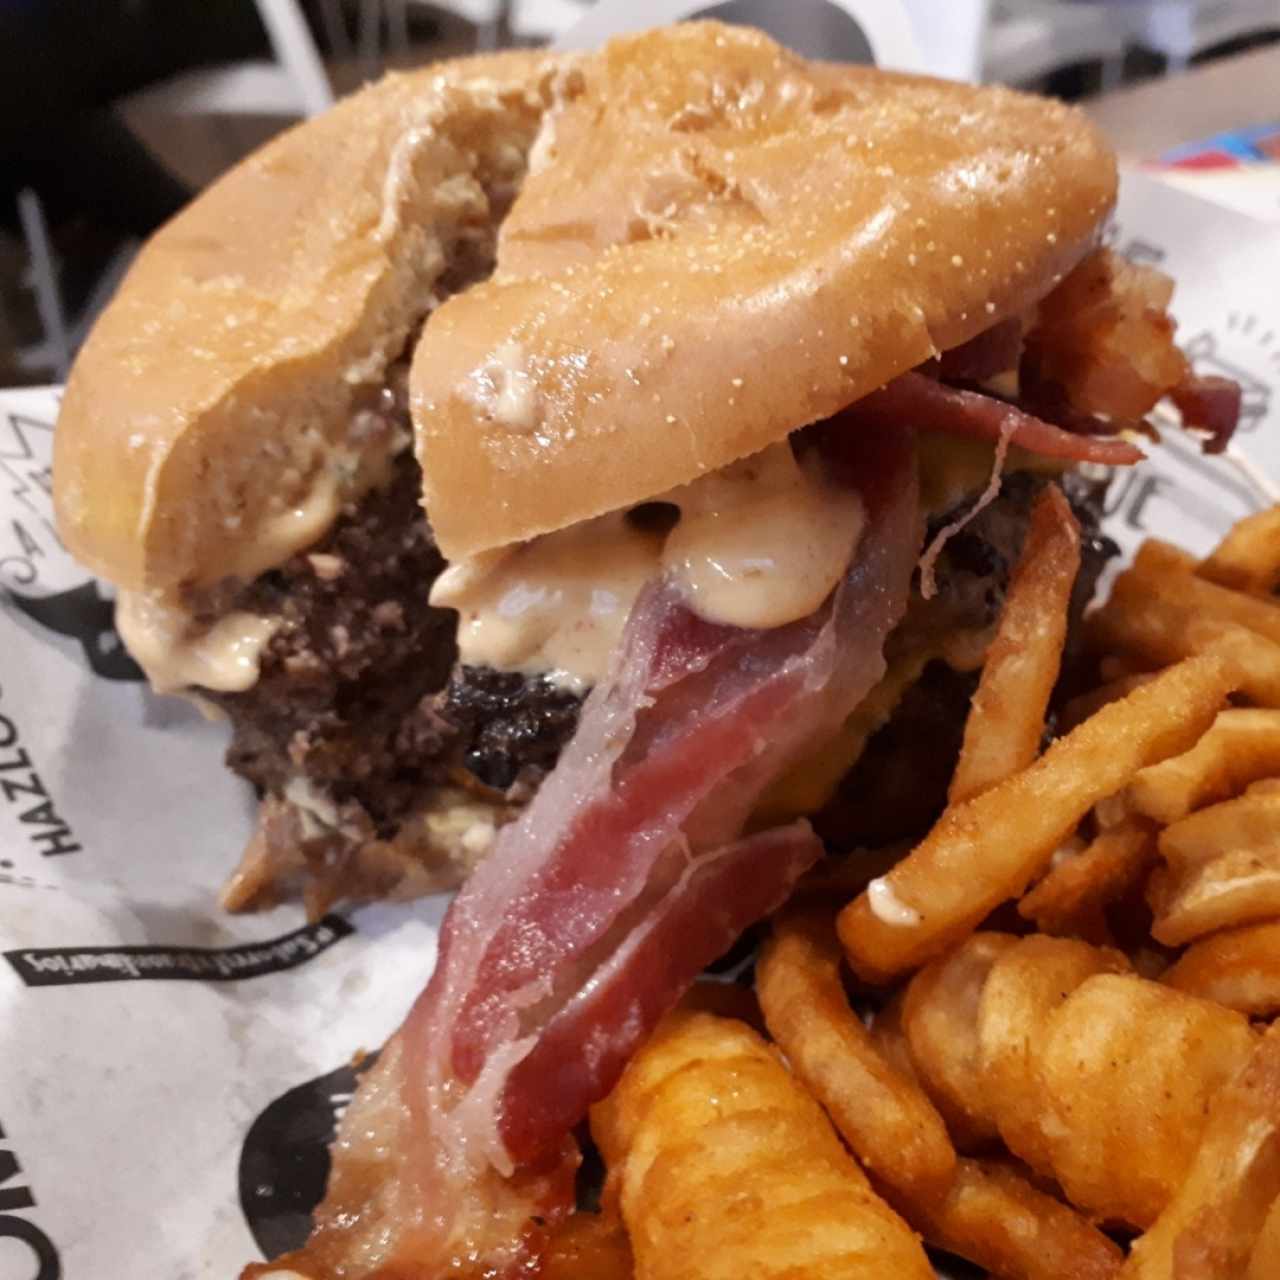 XXXL burger